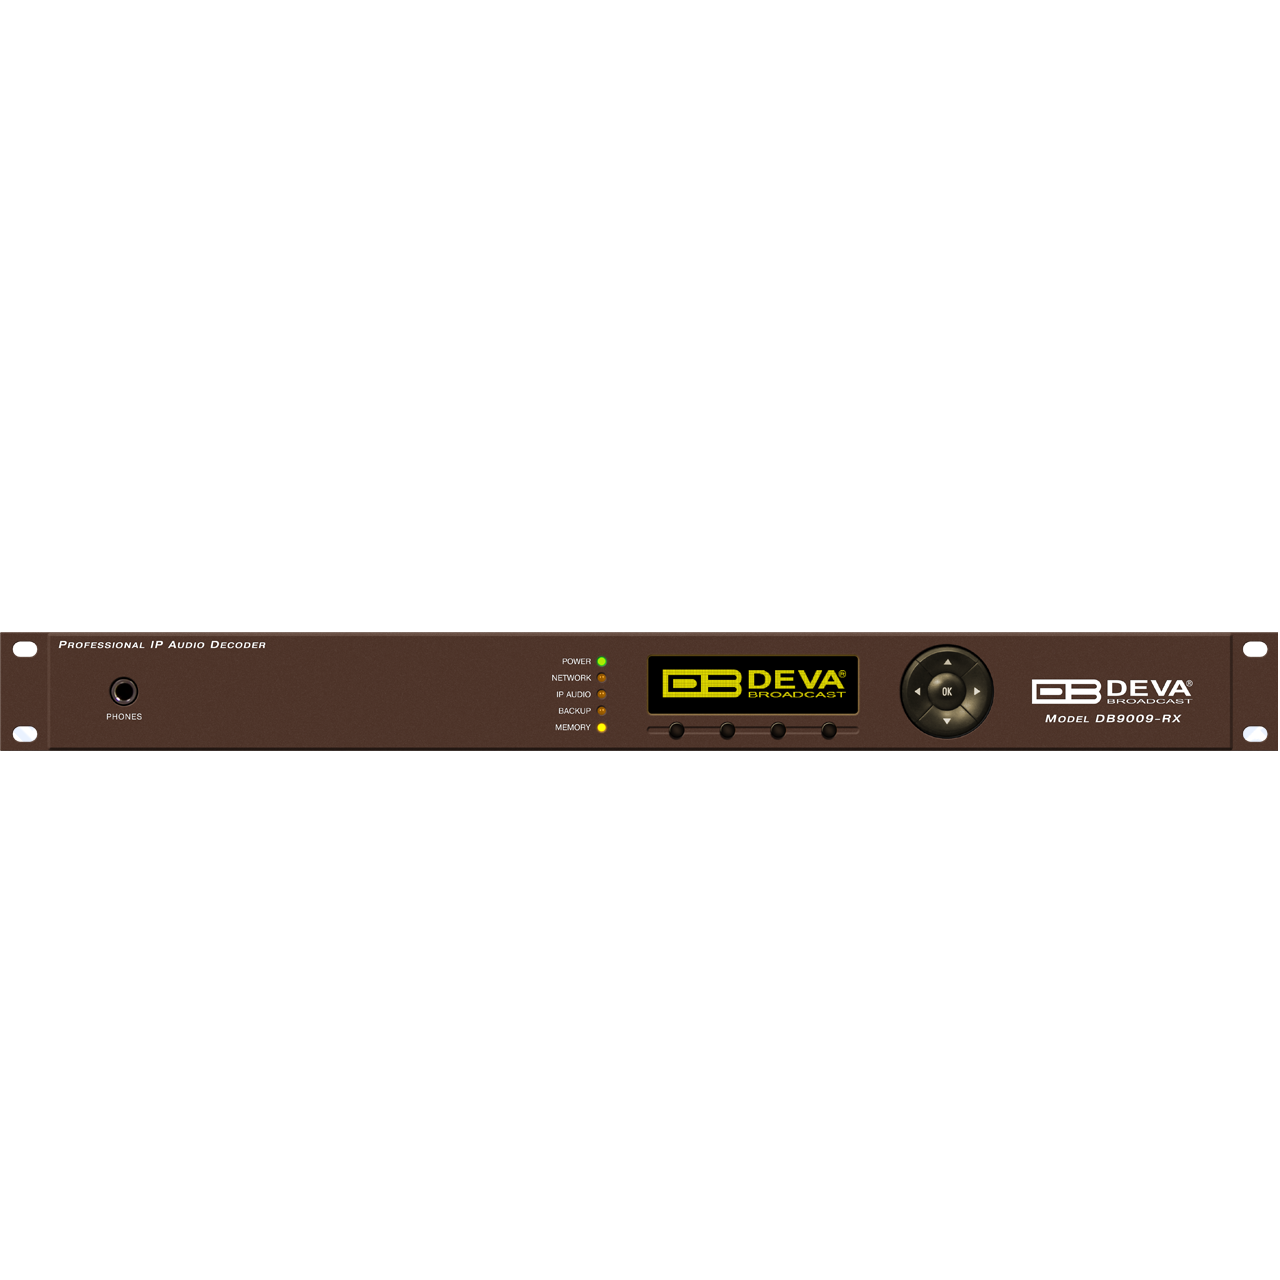 Контроллеры DEVA Broadcast DB9009-RX флягодержатель tacx deva желт t6154 18 b